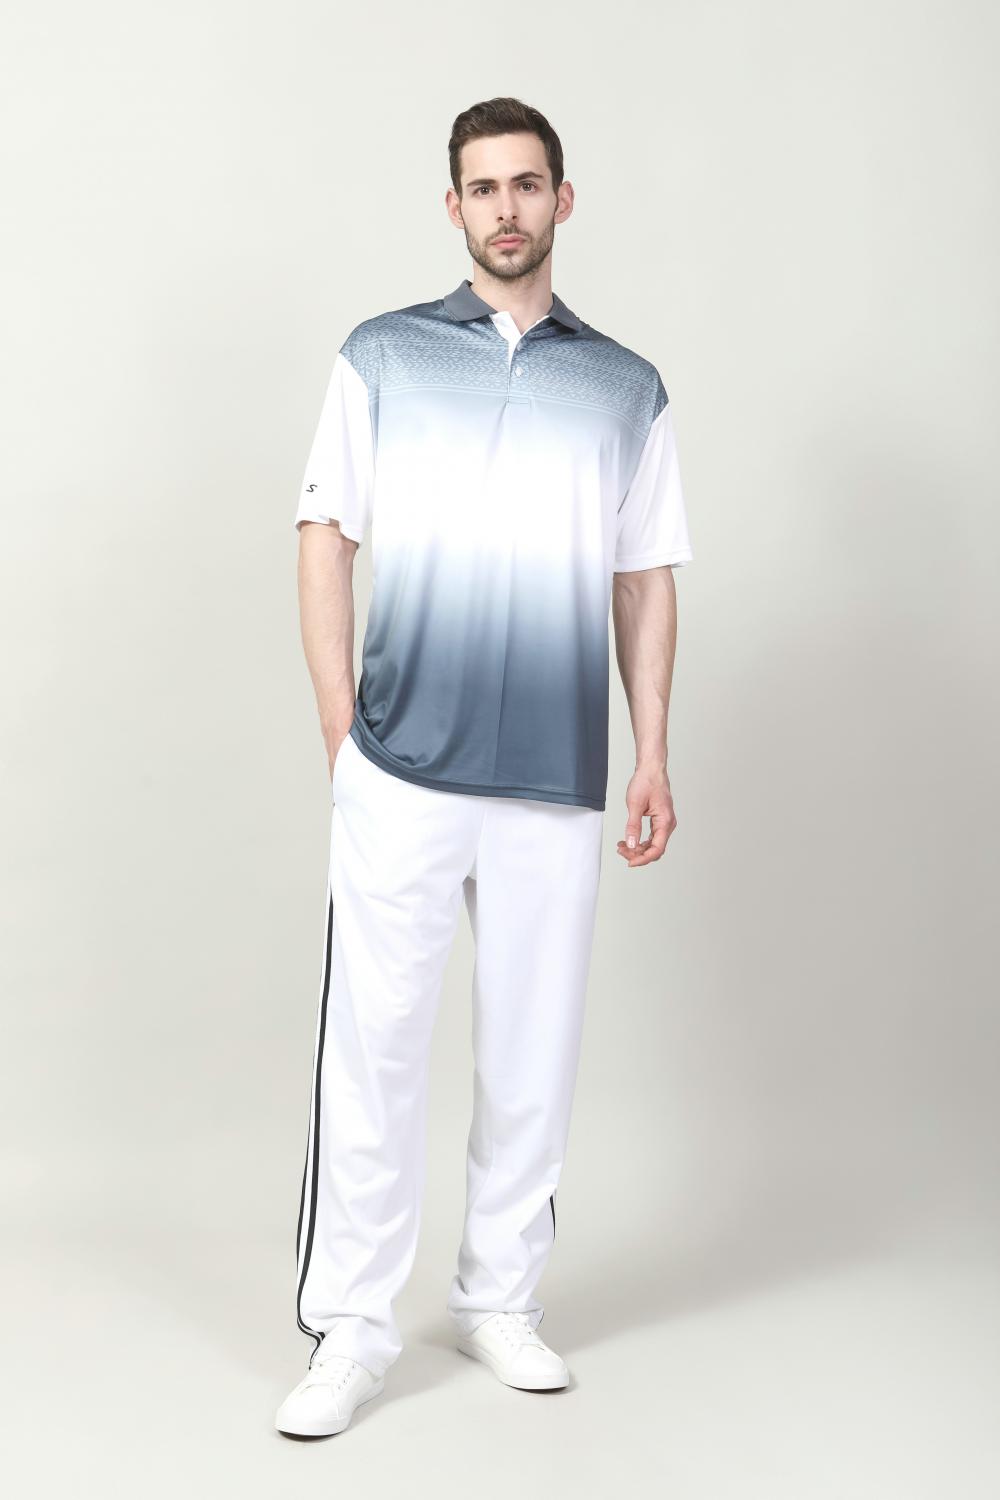 Краткая сухая рубашка для гольфа для мужчин